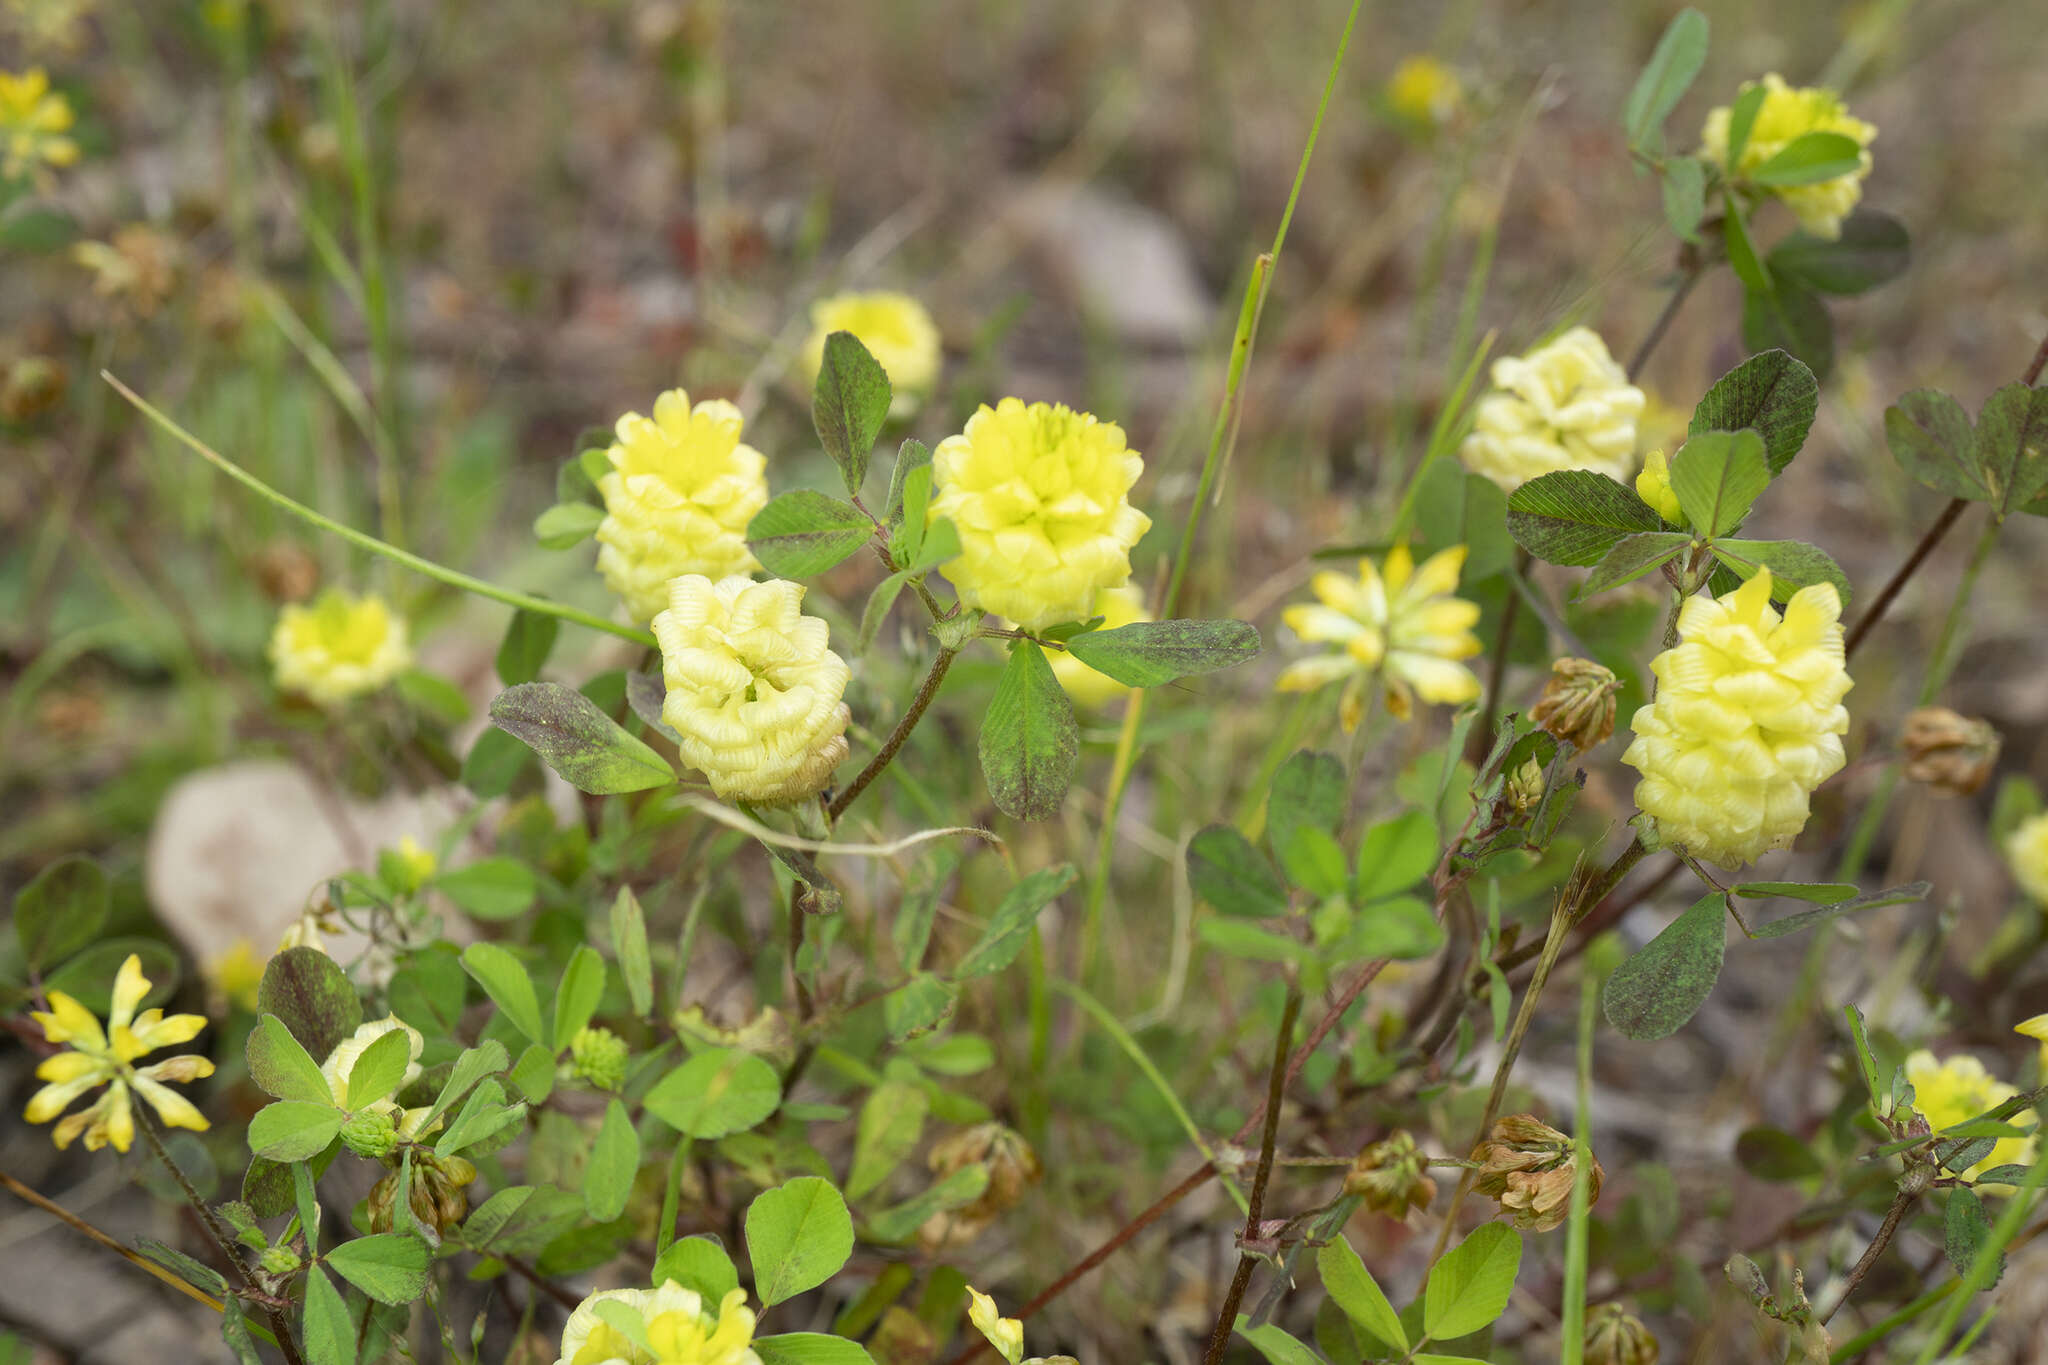 Image of Trifolium campestre var. campestre